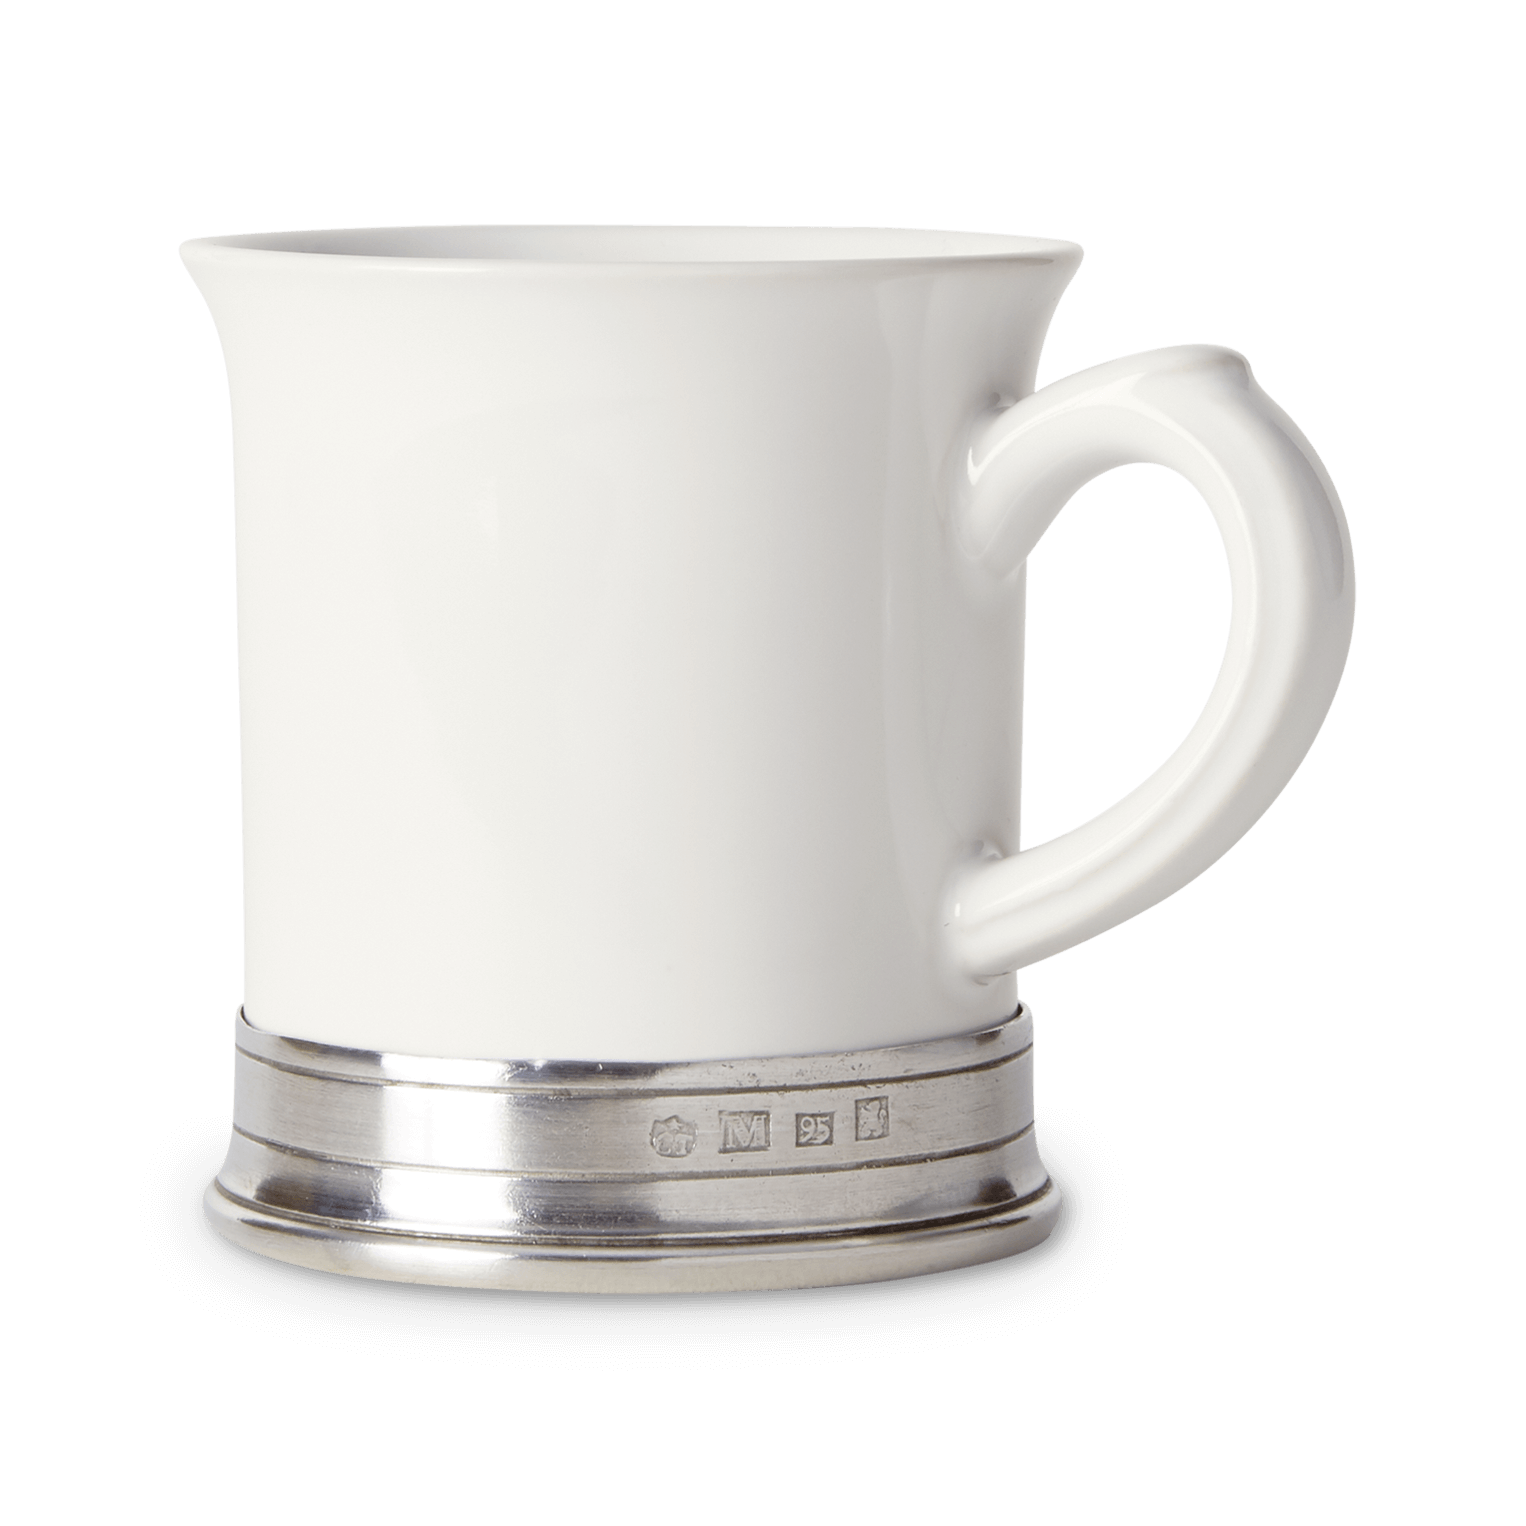 Le Creuset 14 oz. White Tea Mug